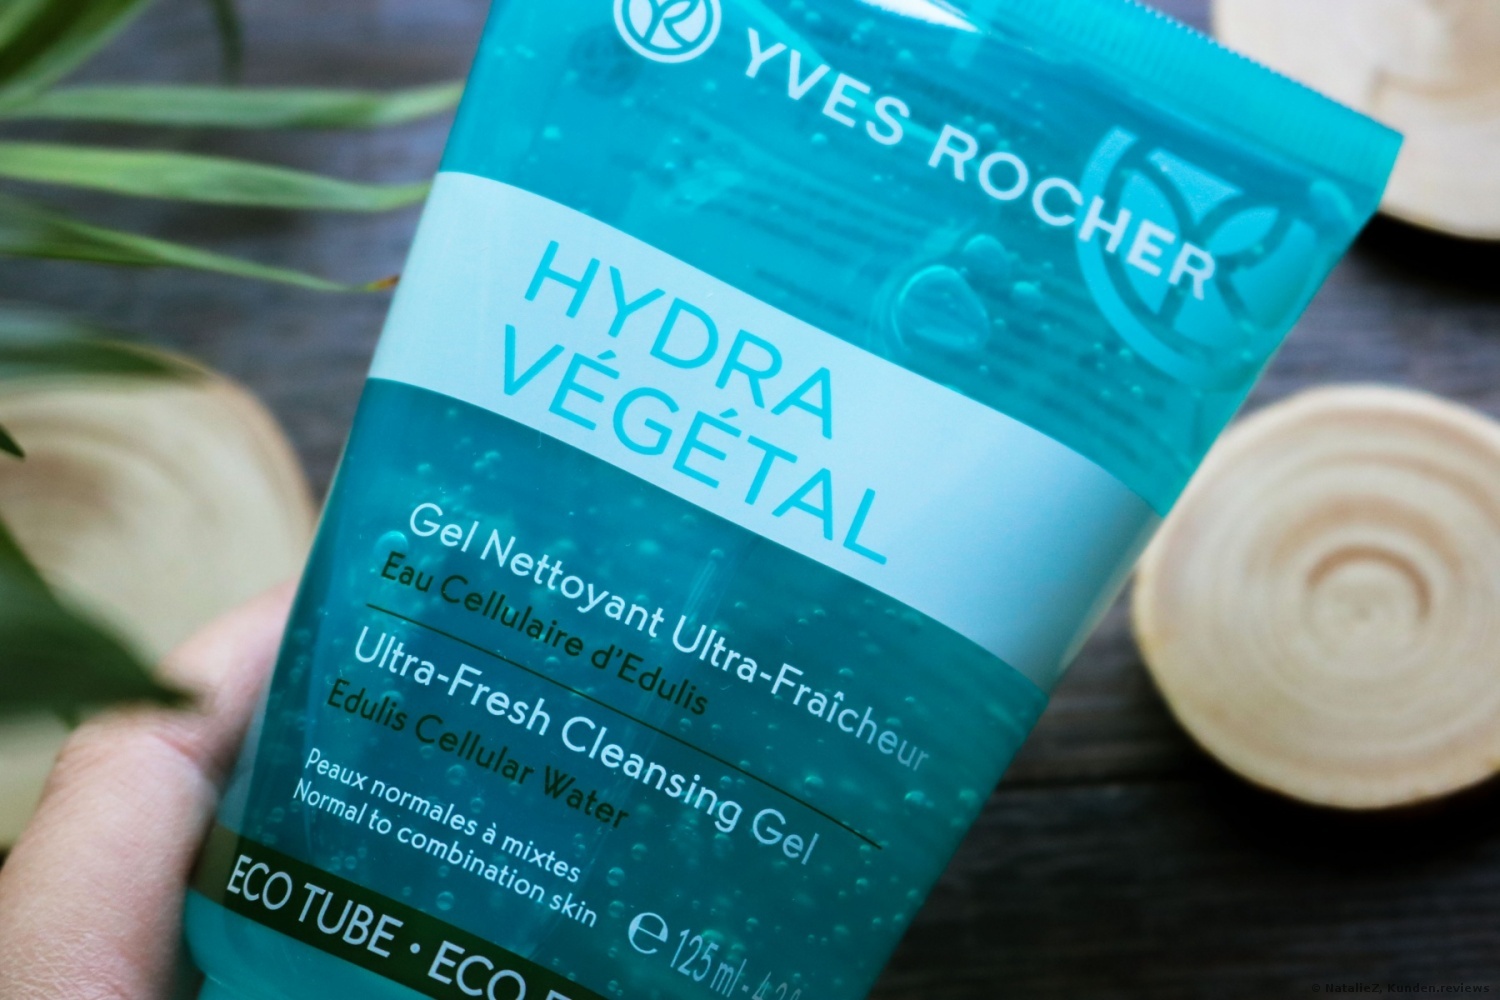  Yves Rocher Hydra Vegetal Reinigungsgel